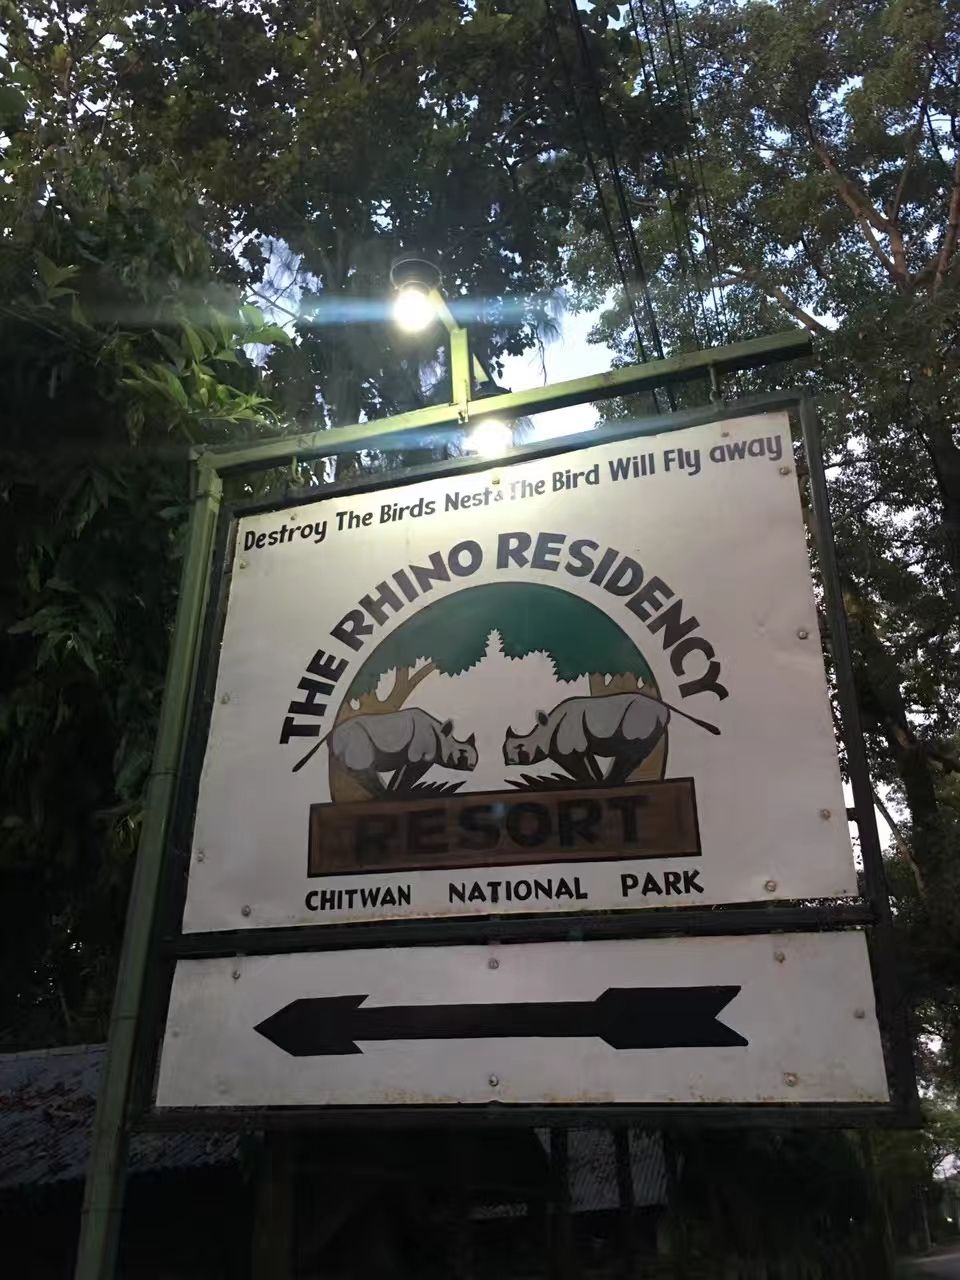 奇达旺国家森林公园内的犀牛度假酒店😂，略陈旧而慵懒的气息，略有殖民地色彩，挺有味道的… 微弱的灯光下